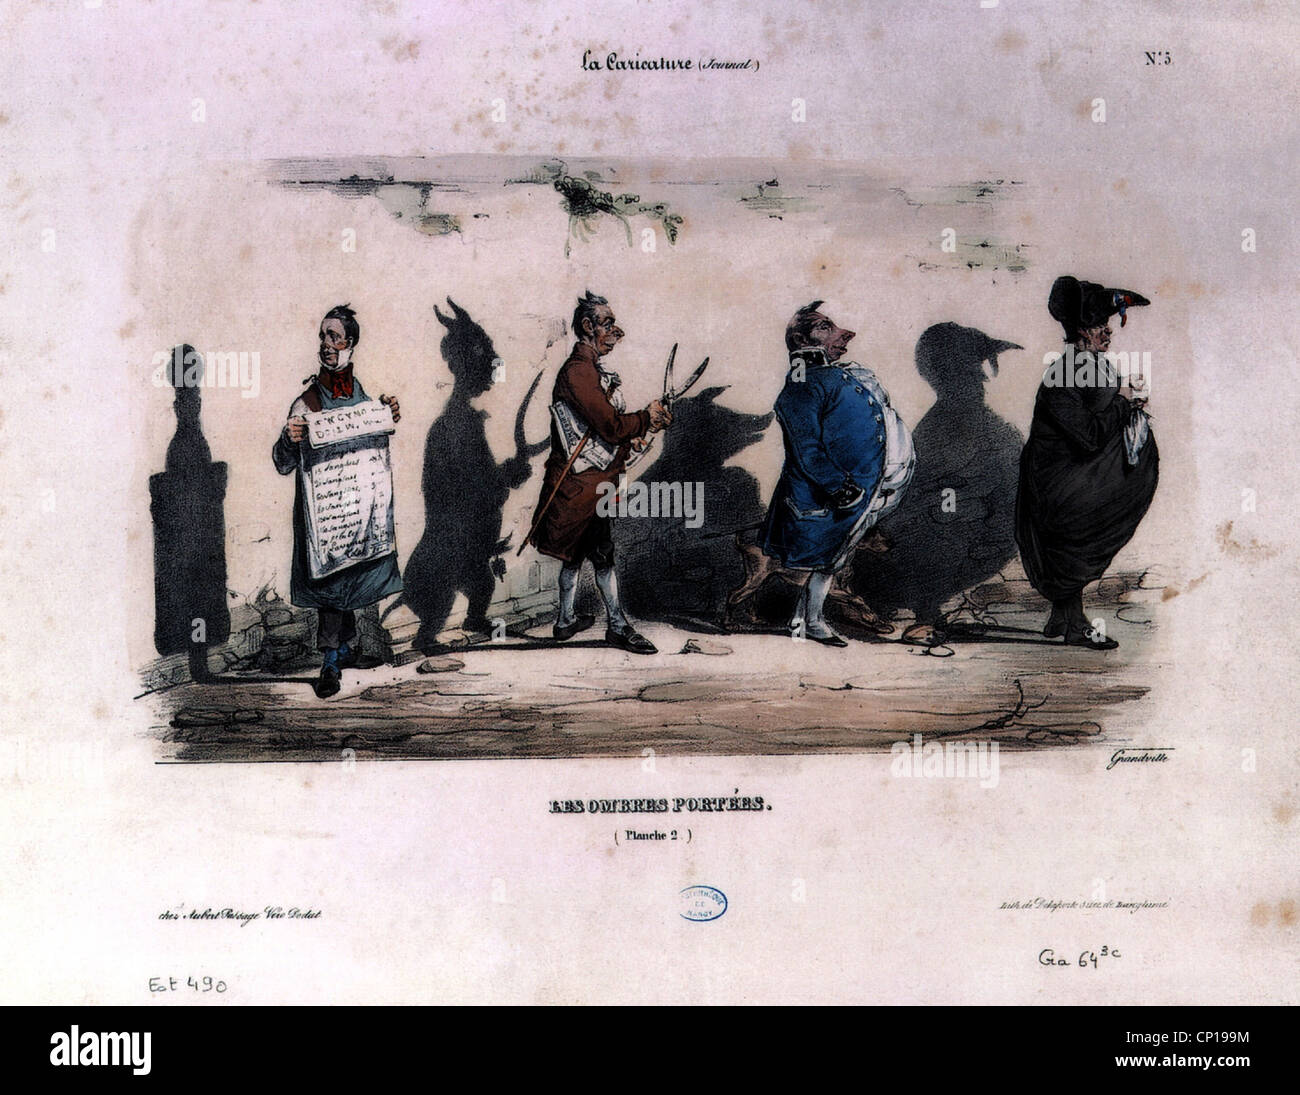 Geographie/reisen, Frankreich, Politik, Karikatur, 2 Blatt, 'Les Ombres portees" (Schatten), zeichnung von J.J.Grandville, 1830, Artist's Urheberrecht nicht geklärt zu werden. Stockfoto